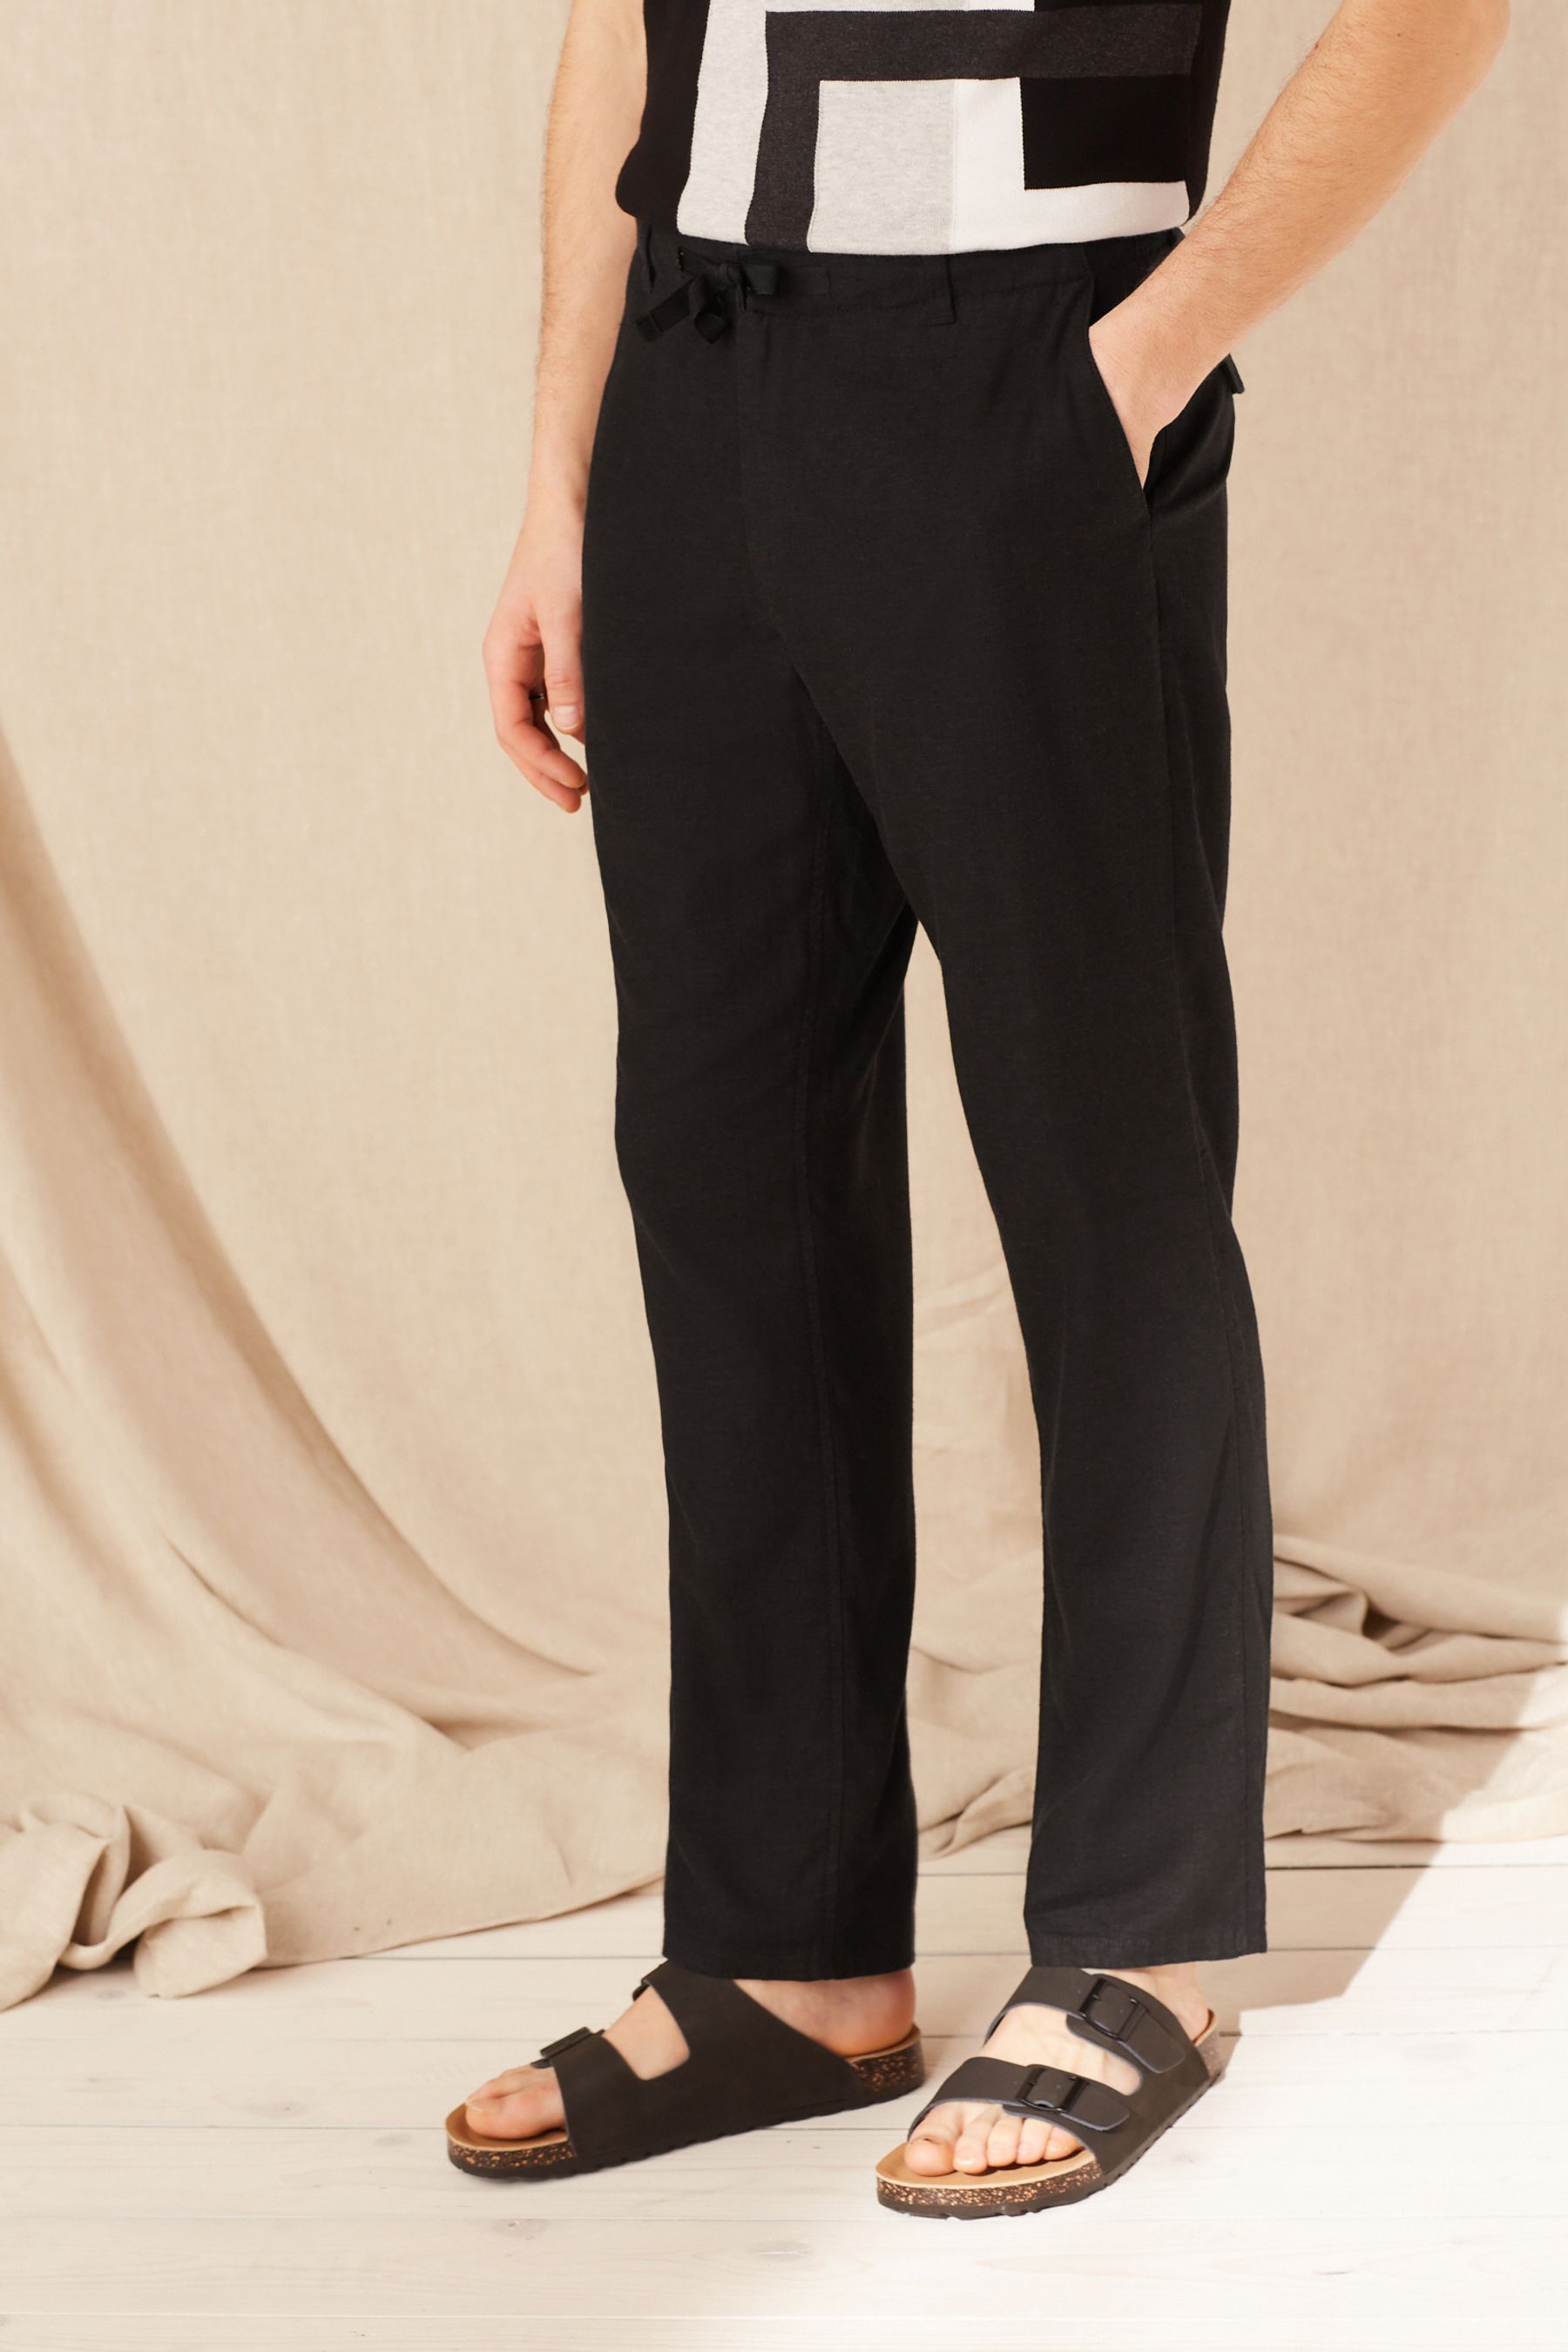 Linen Pants for Men 2023  Best Linen Trousers For Men